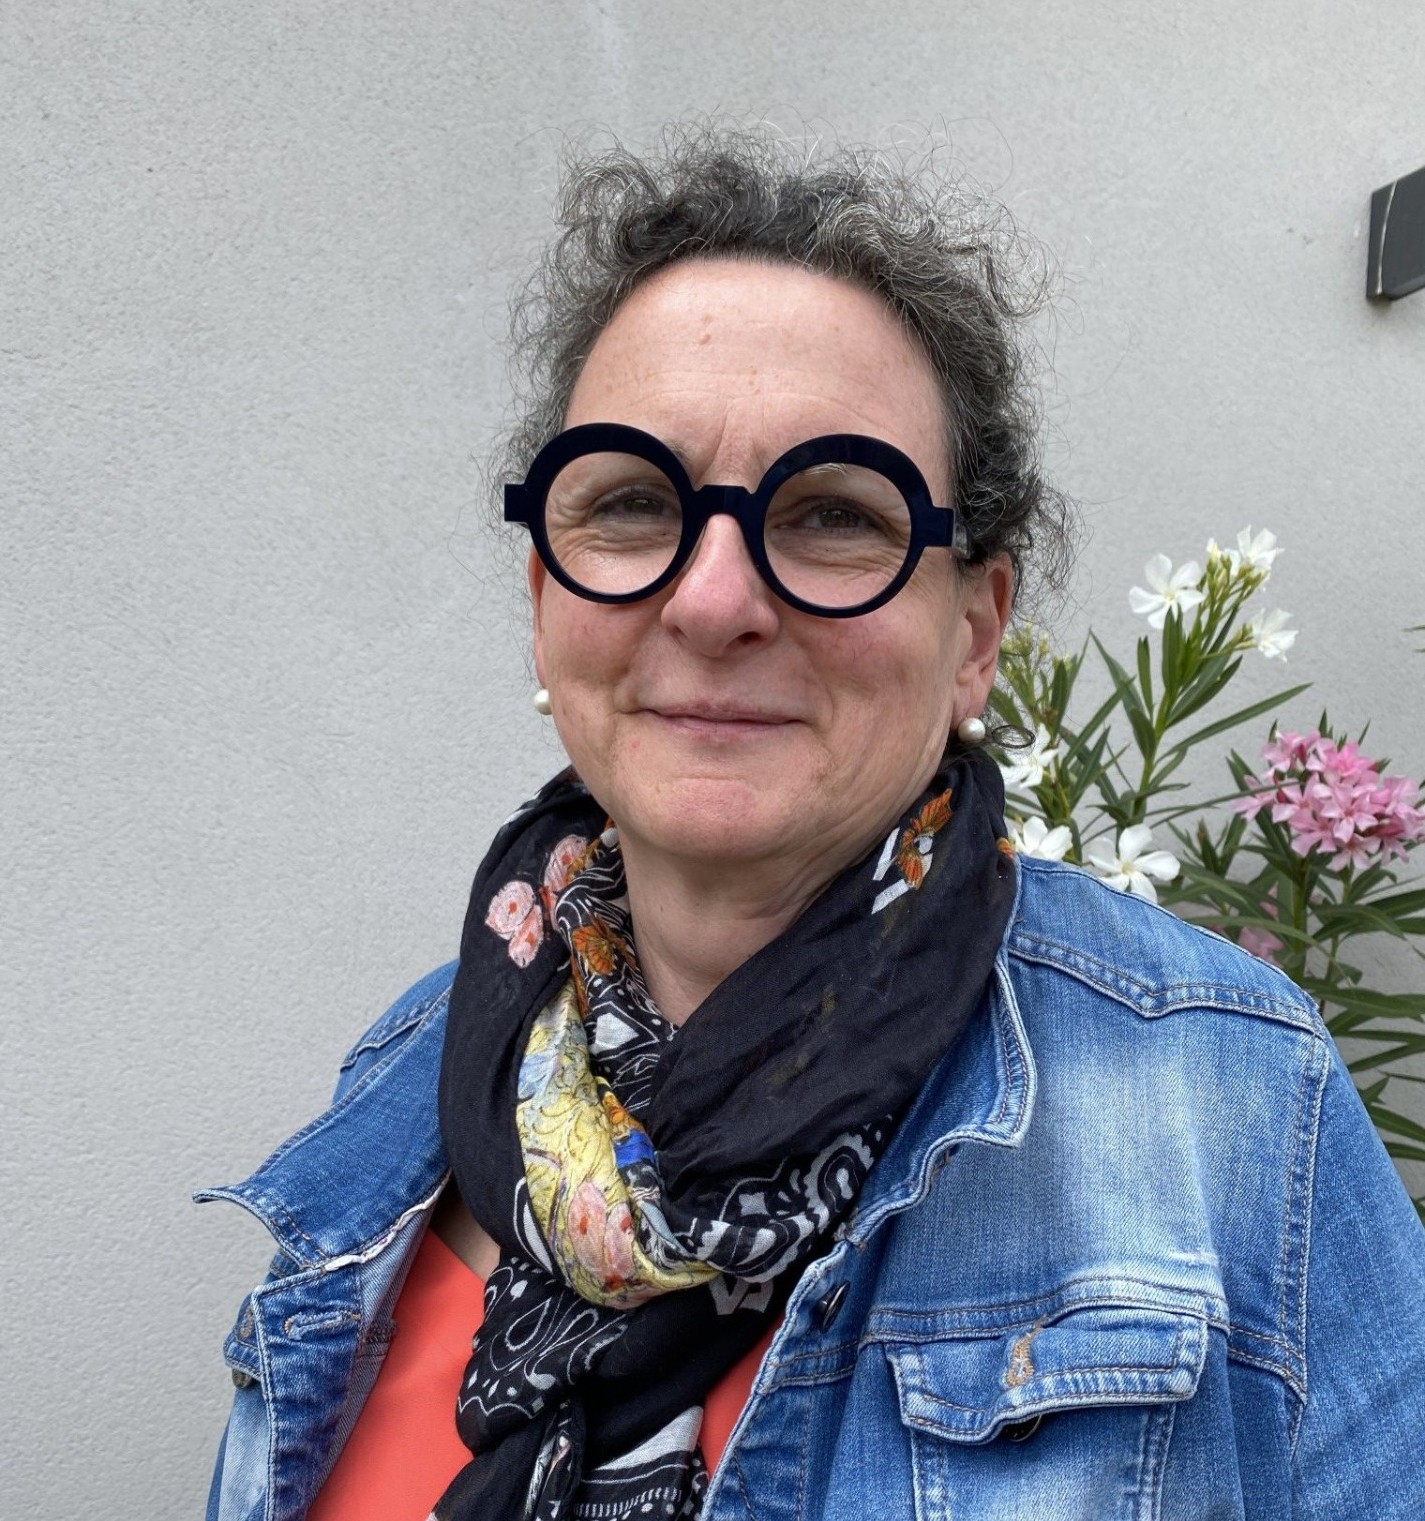  FDSEA de la Drôme : Sandrine Roussin-Philibert nouvelle présidente